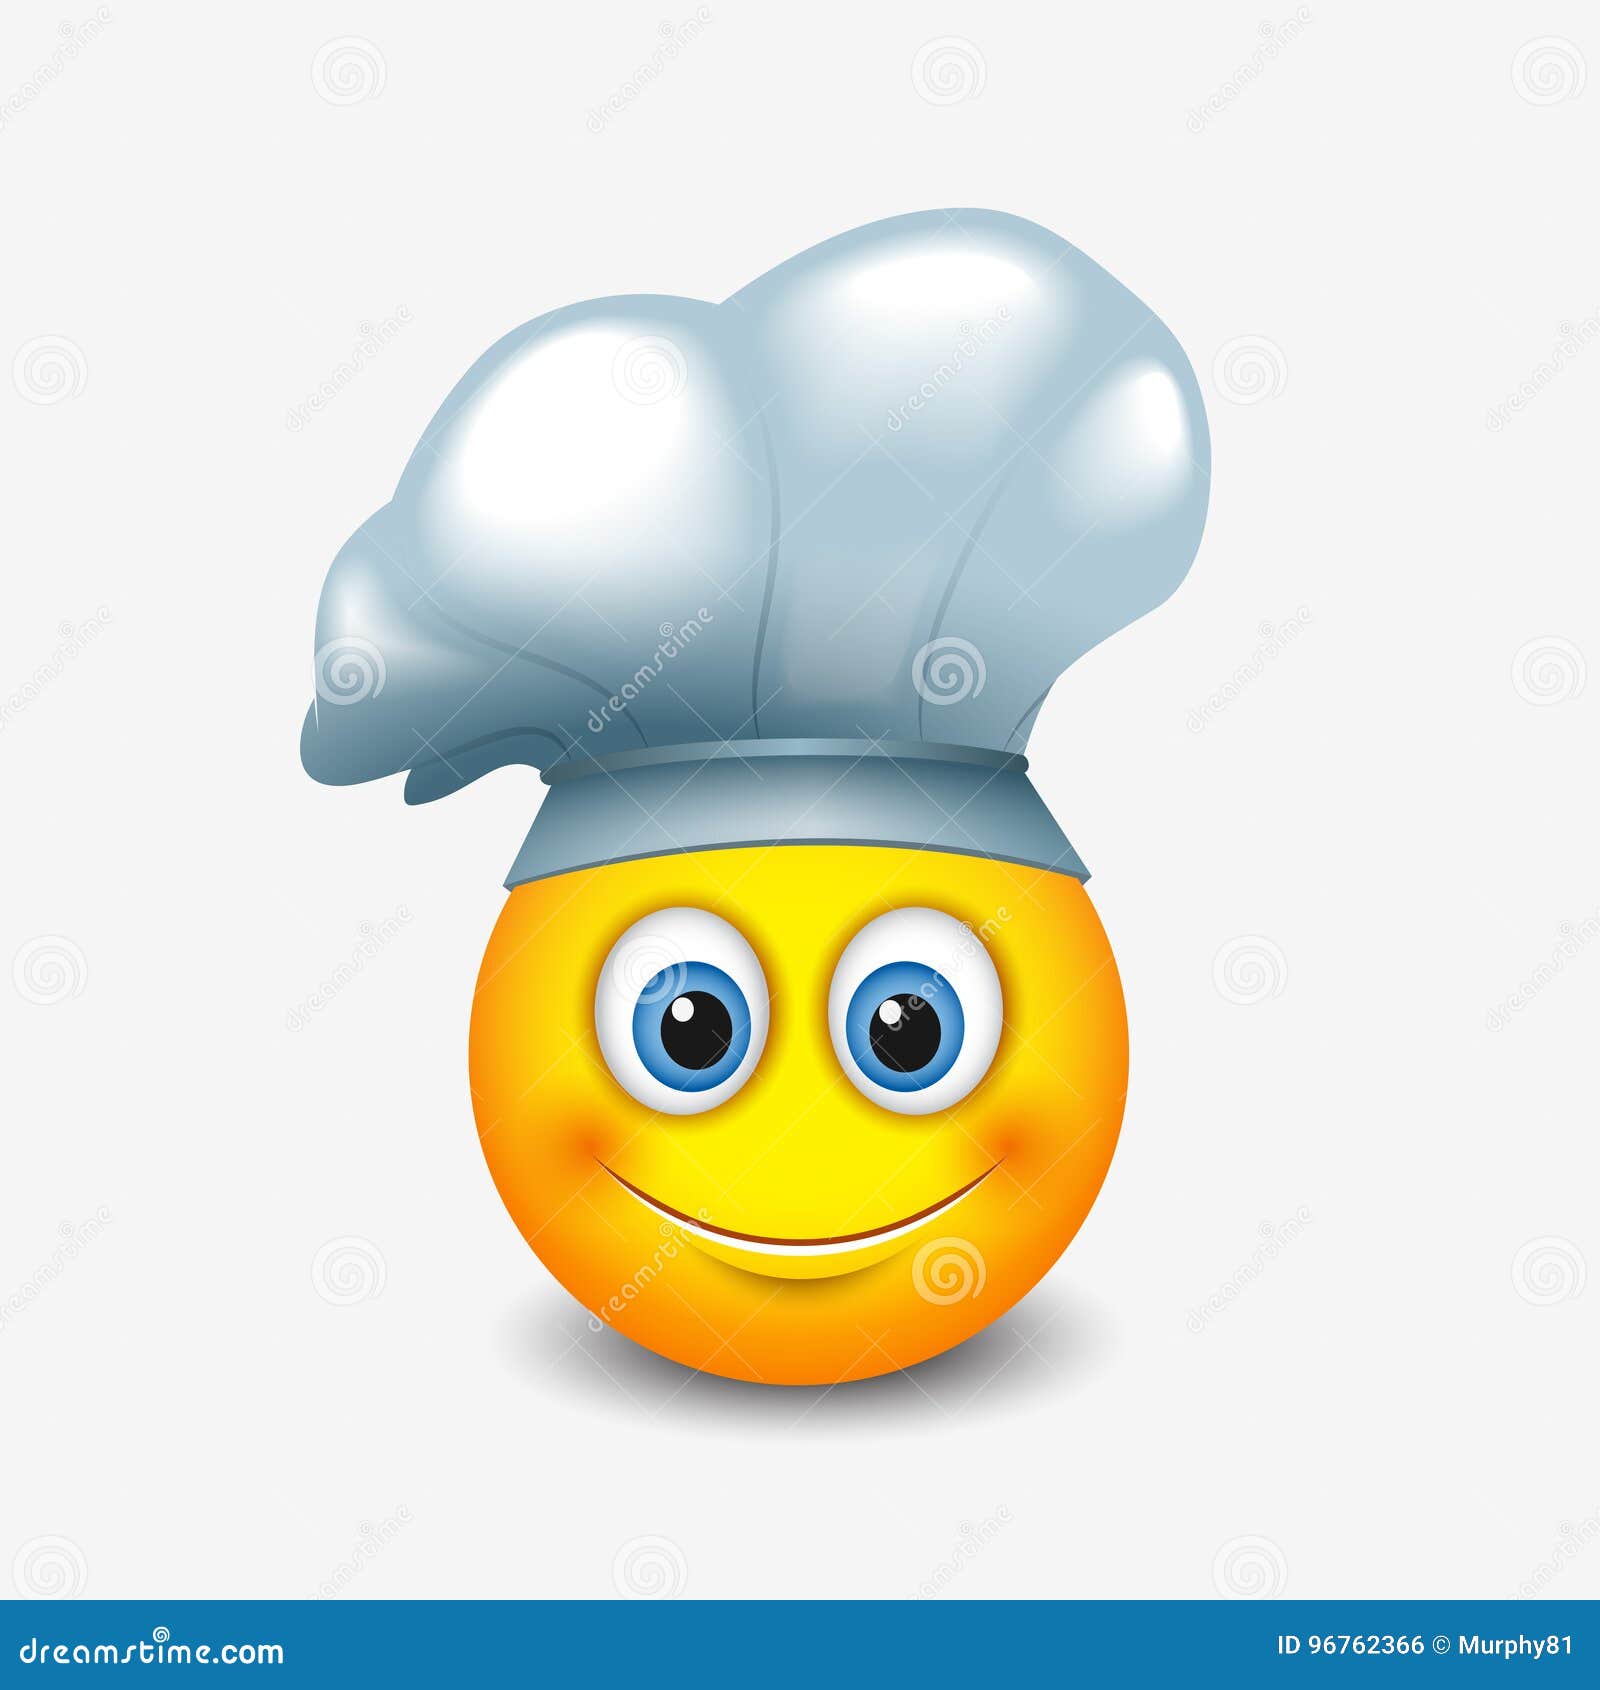 Cute emoticon wearing chef hat - emoji, smiley - vector illustration